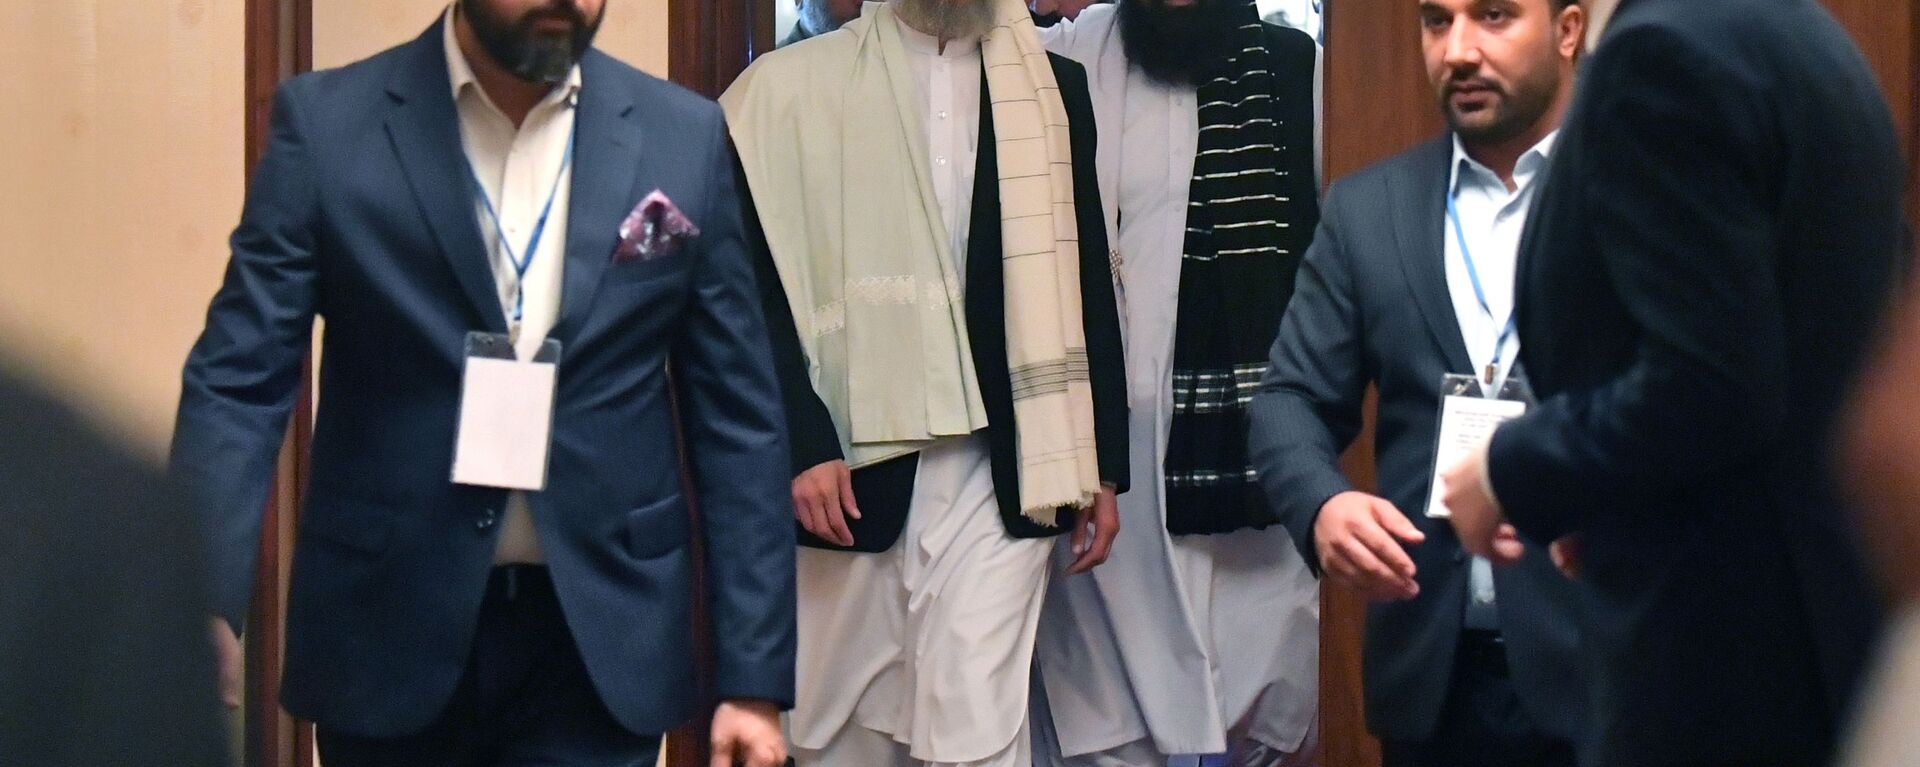 Представитель движения Талибан* Абдул Салам Ханафи после третьего заседания московского формата консультаций по Афганистану - Sputnik Ўзбекистон, 1920, 21.10.2021